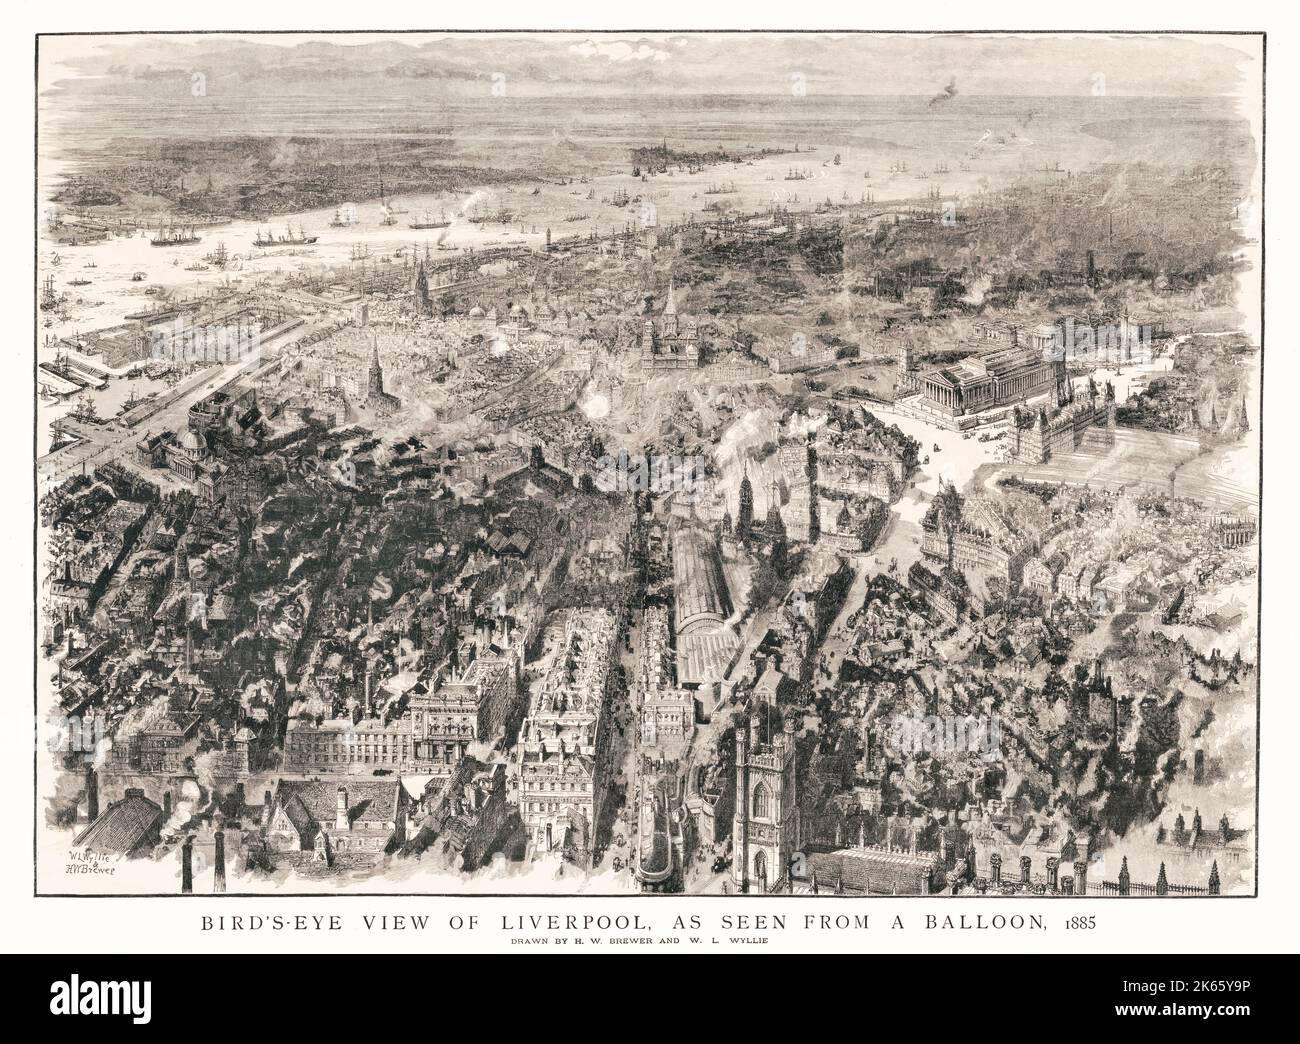 Una vista aerea di Liverpool disegnata da H W Brewer e W L Wyllie nel 1885 che mostra il centro della città, con la St George's Hall in primo piano. Il disegno mostra anche la chiesa di San Giorgio costruita sul sito del vecchio castello nel 1825, fino al 1899, quando fu demolita e il Monumento Vittoria eretto nel 1902. Foto Stock